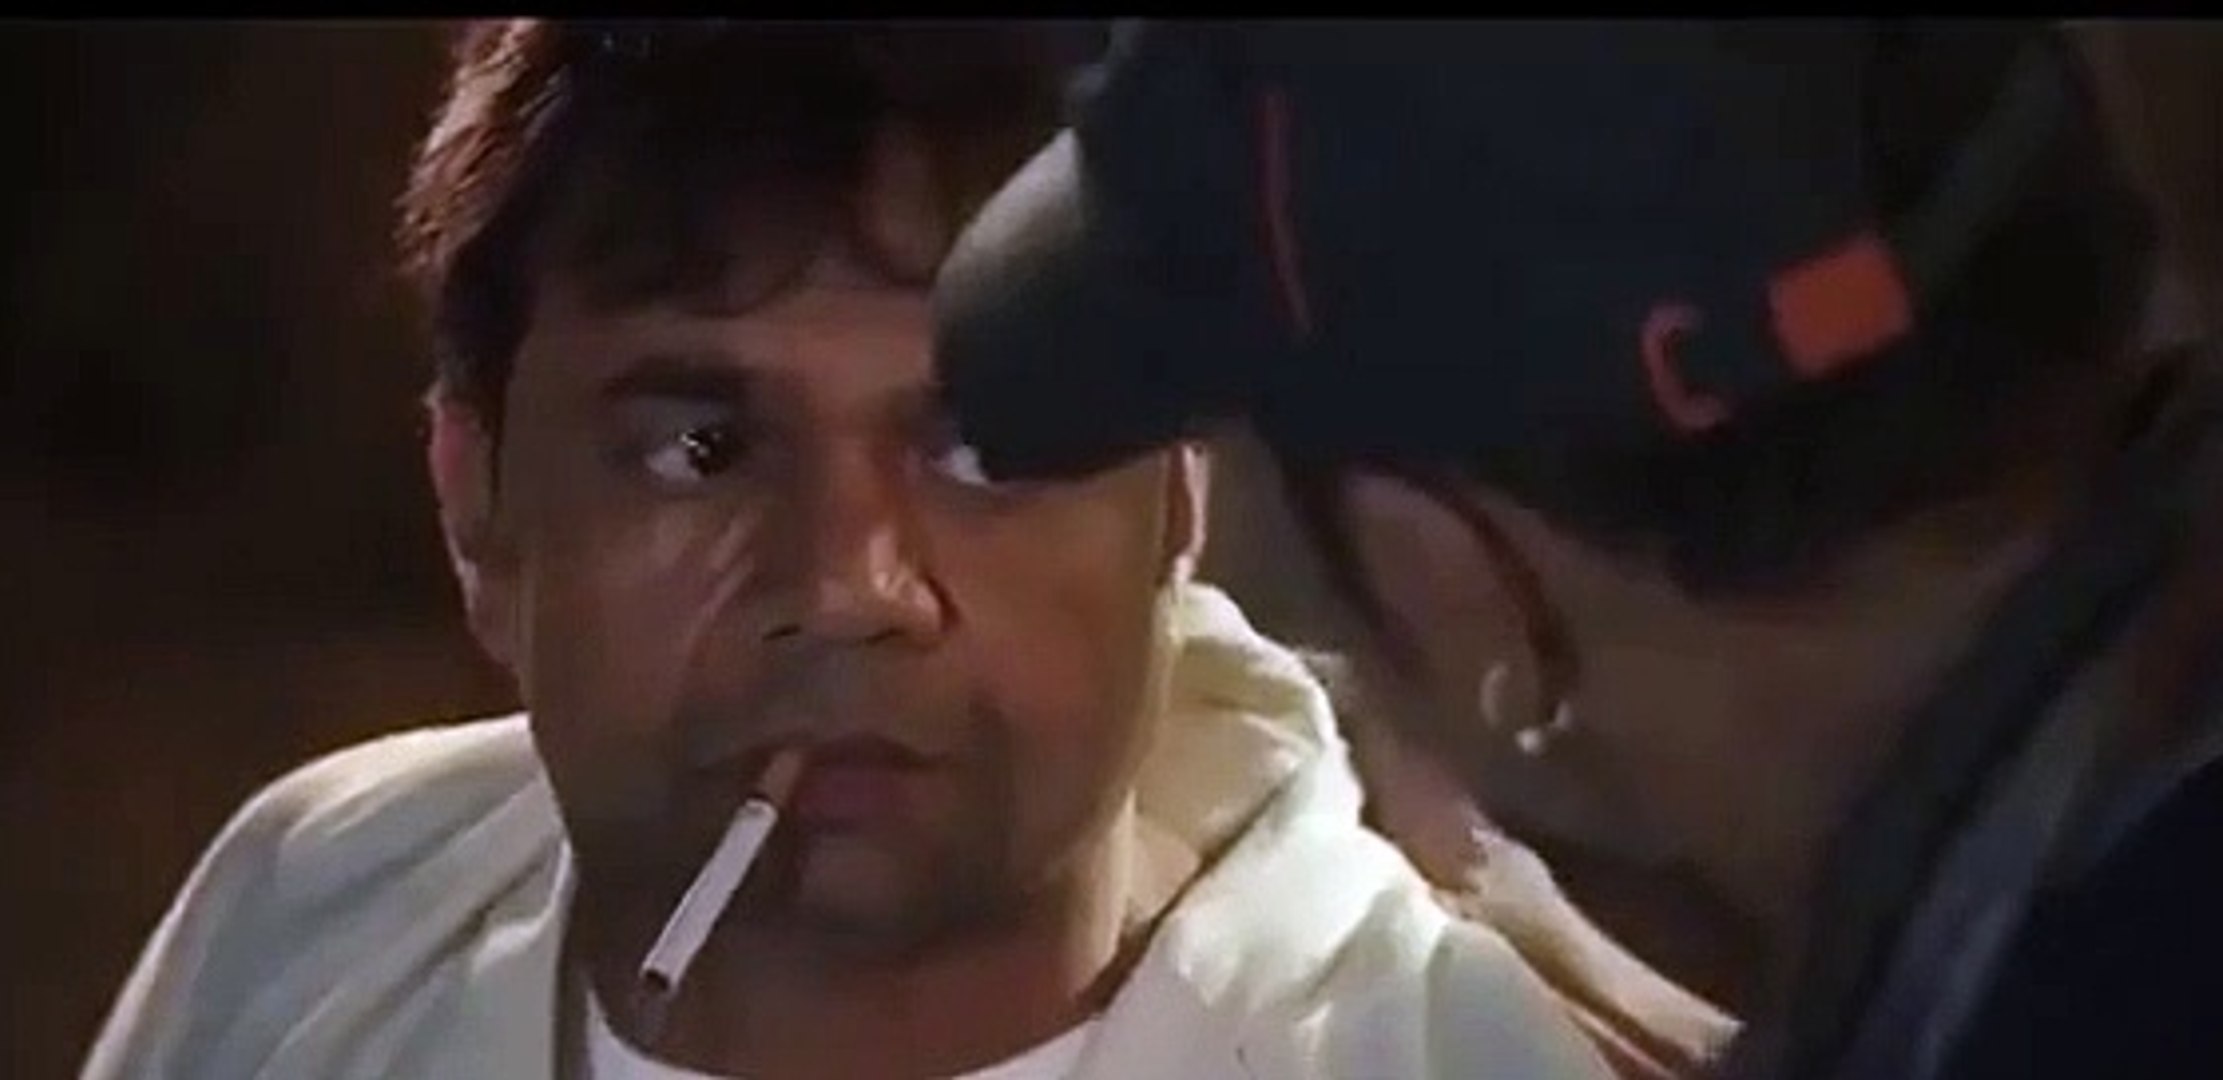 Rajpal vs Nana Patekar - Funny & Comedy Scene of Rajpal vs Nana Patekar -  Hindi Movie Comedy scenes - video Dailymotion